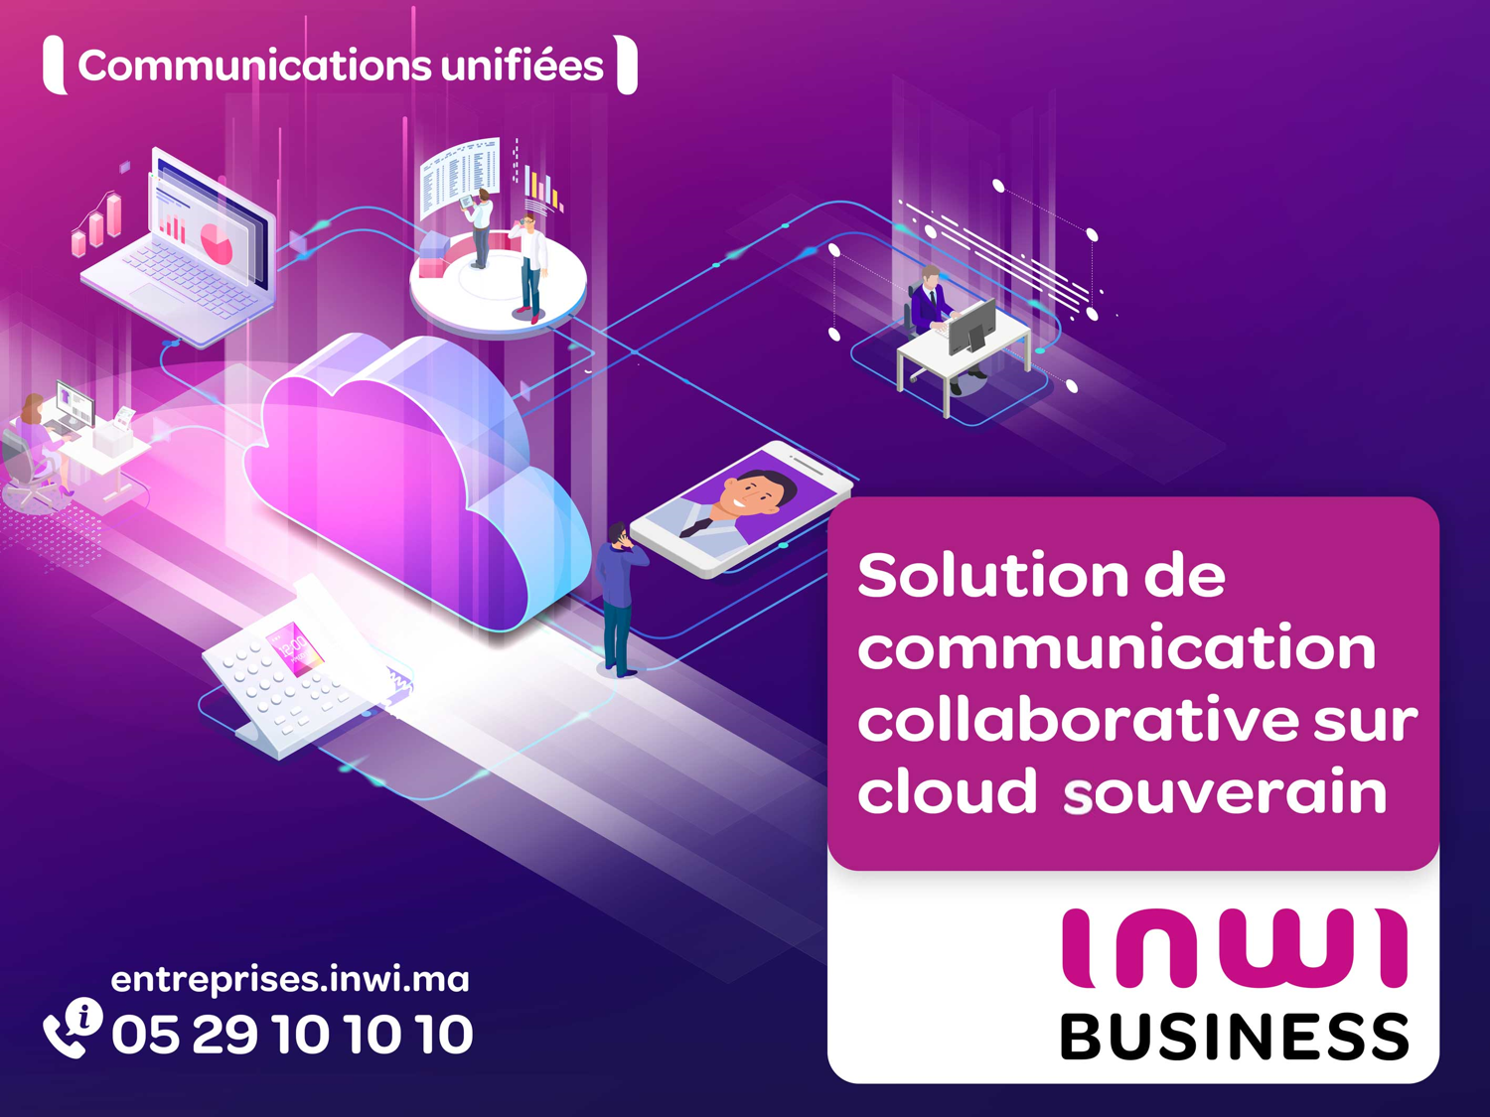 inwi lance sa solution de Communications Unifiées à destination des entreprises